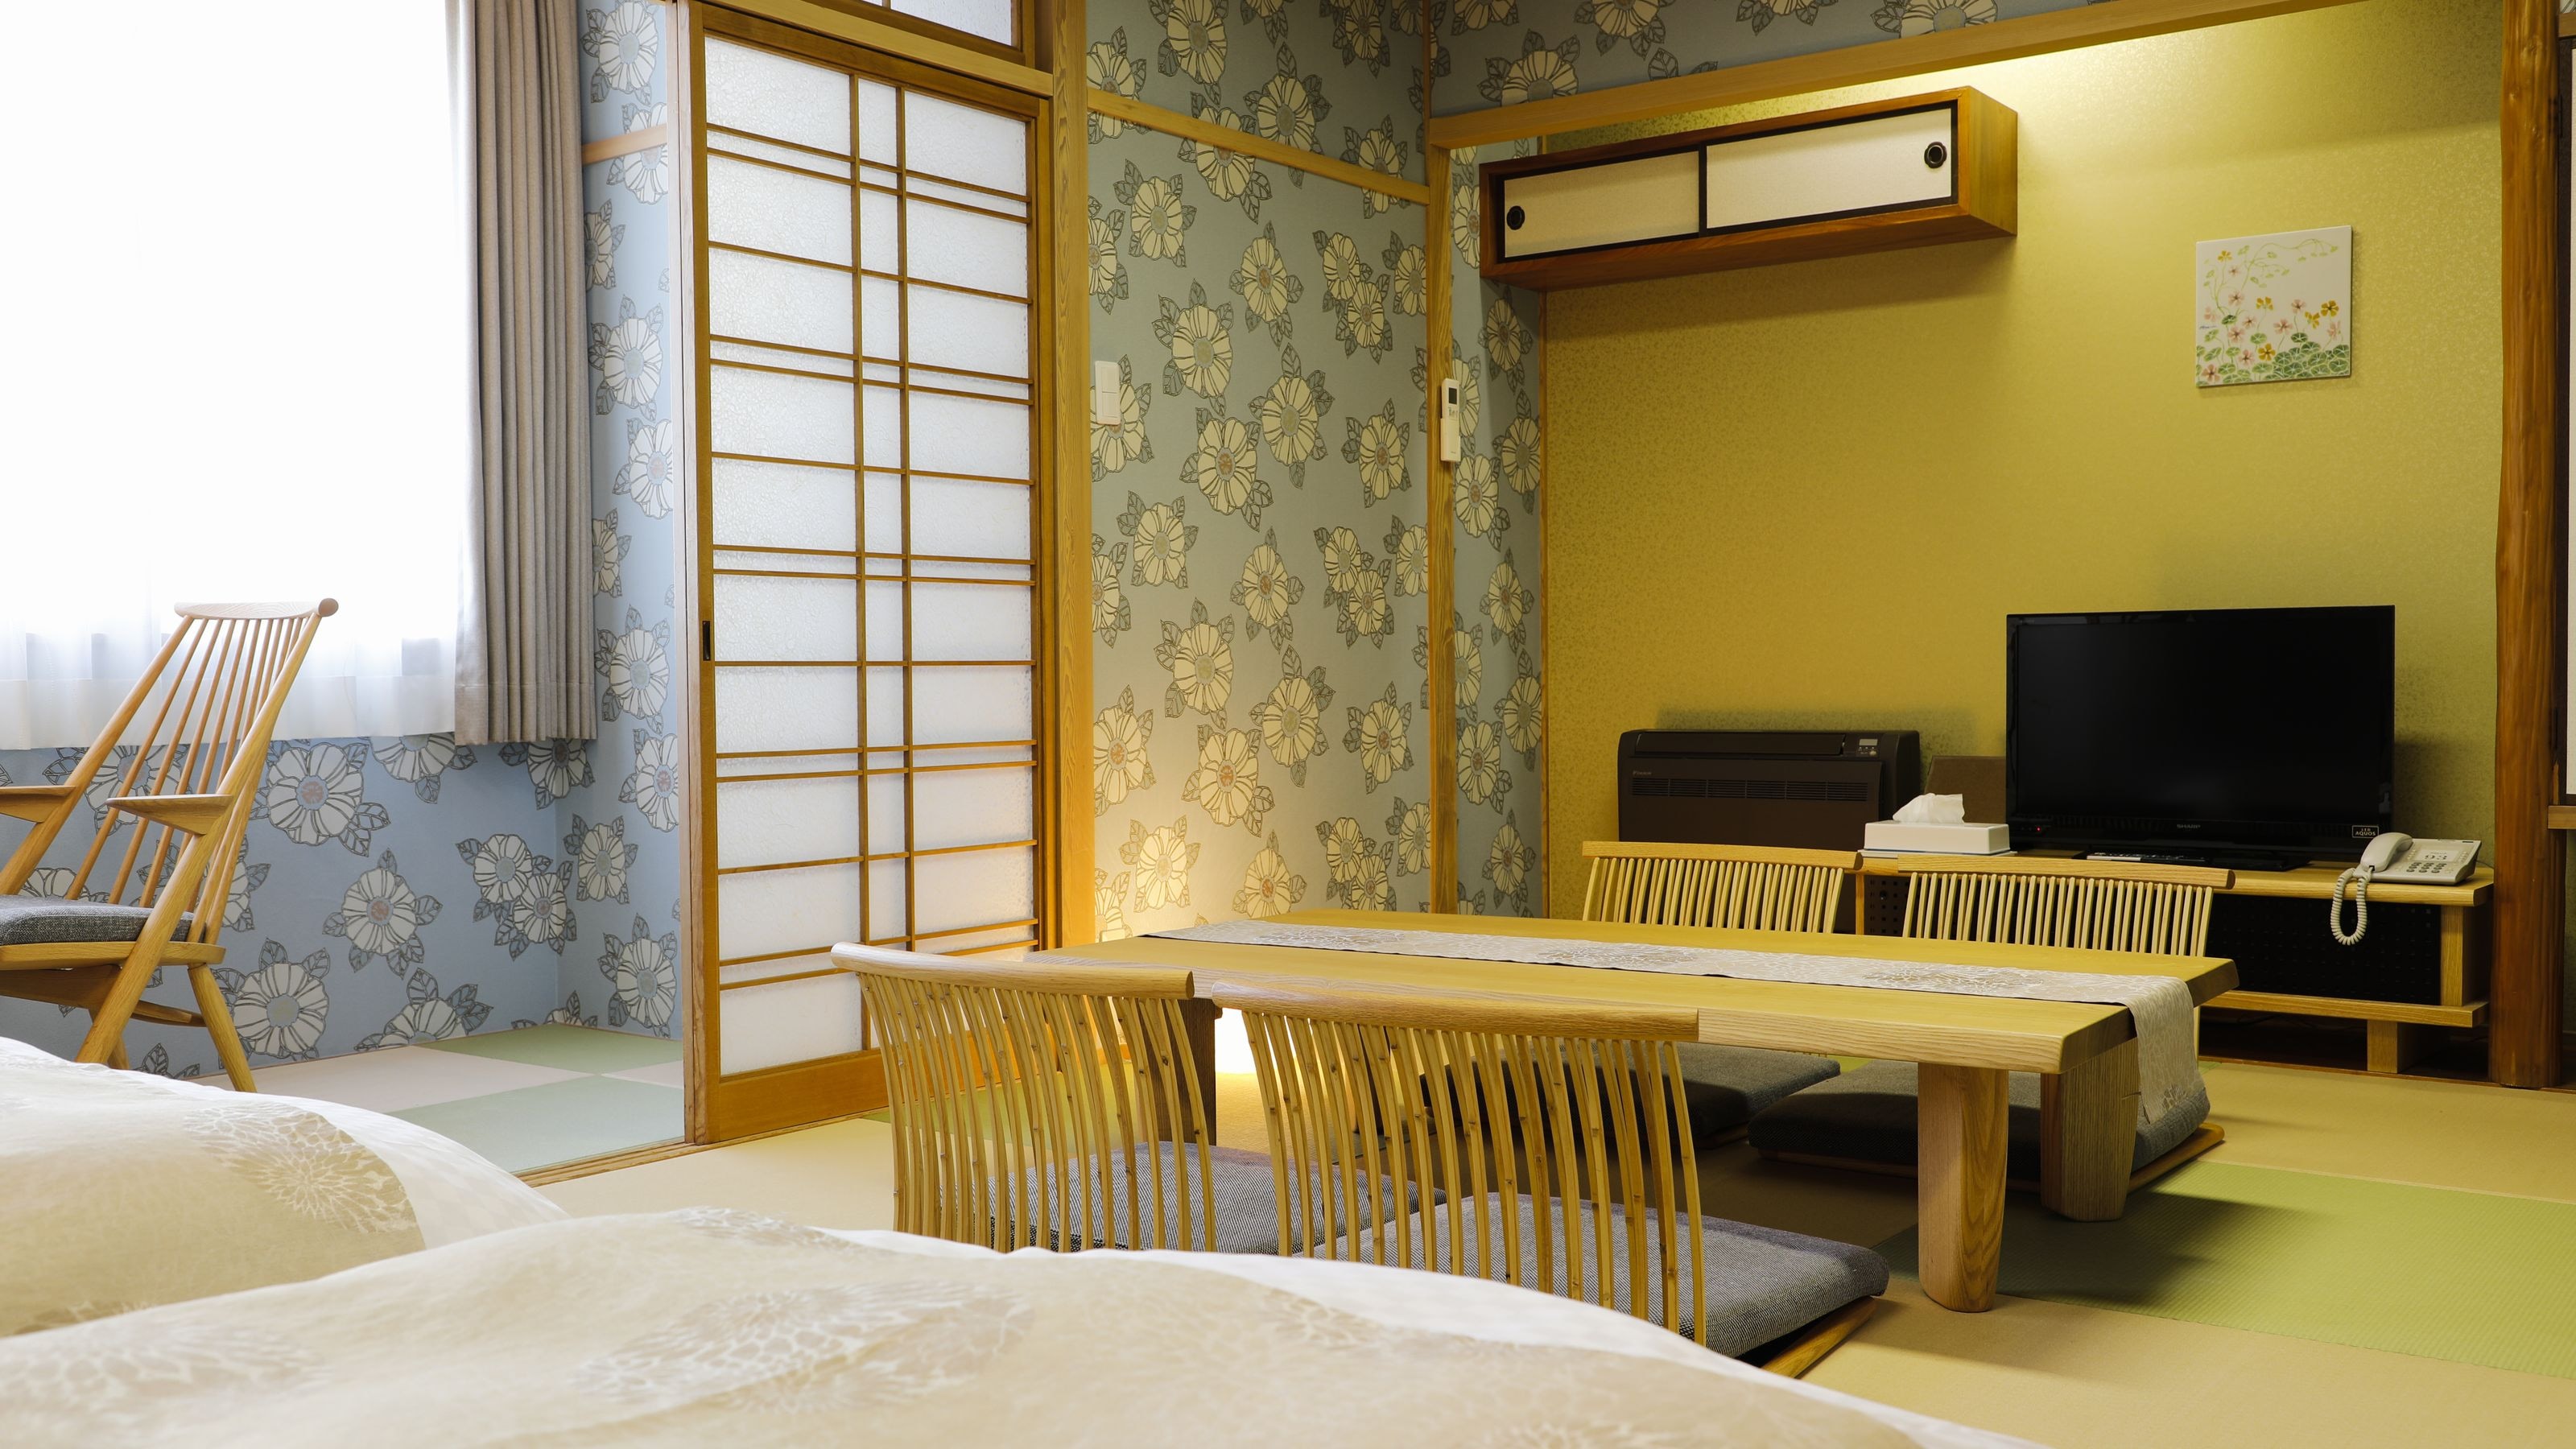 ＊DX 일본식 객실 예: 넓은 일본식 객실에 시몬스 침대를 배치